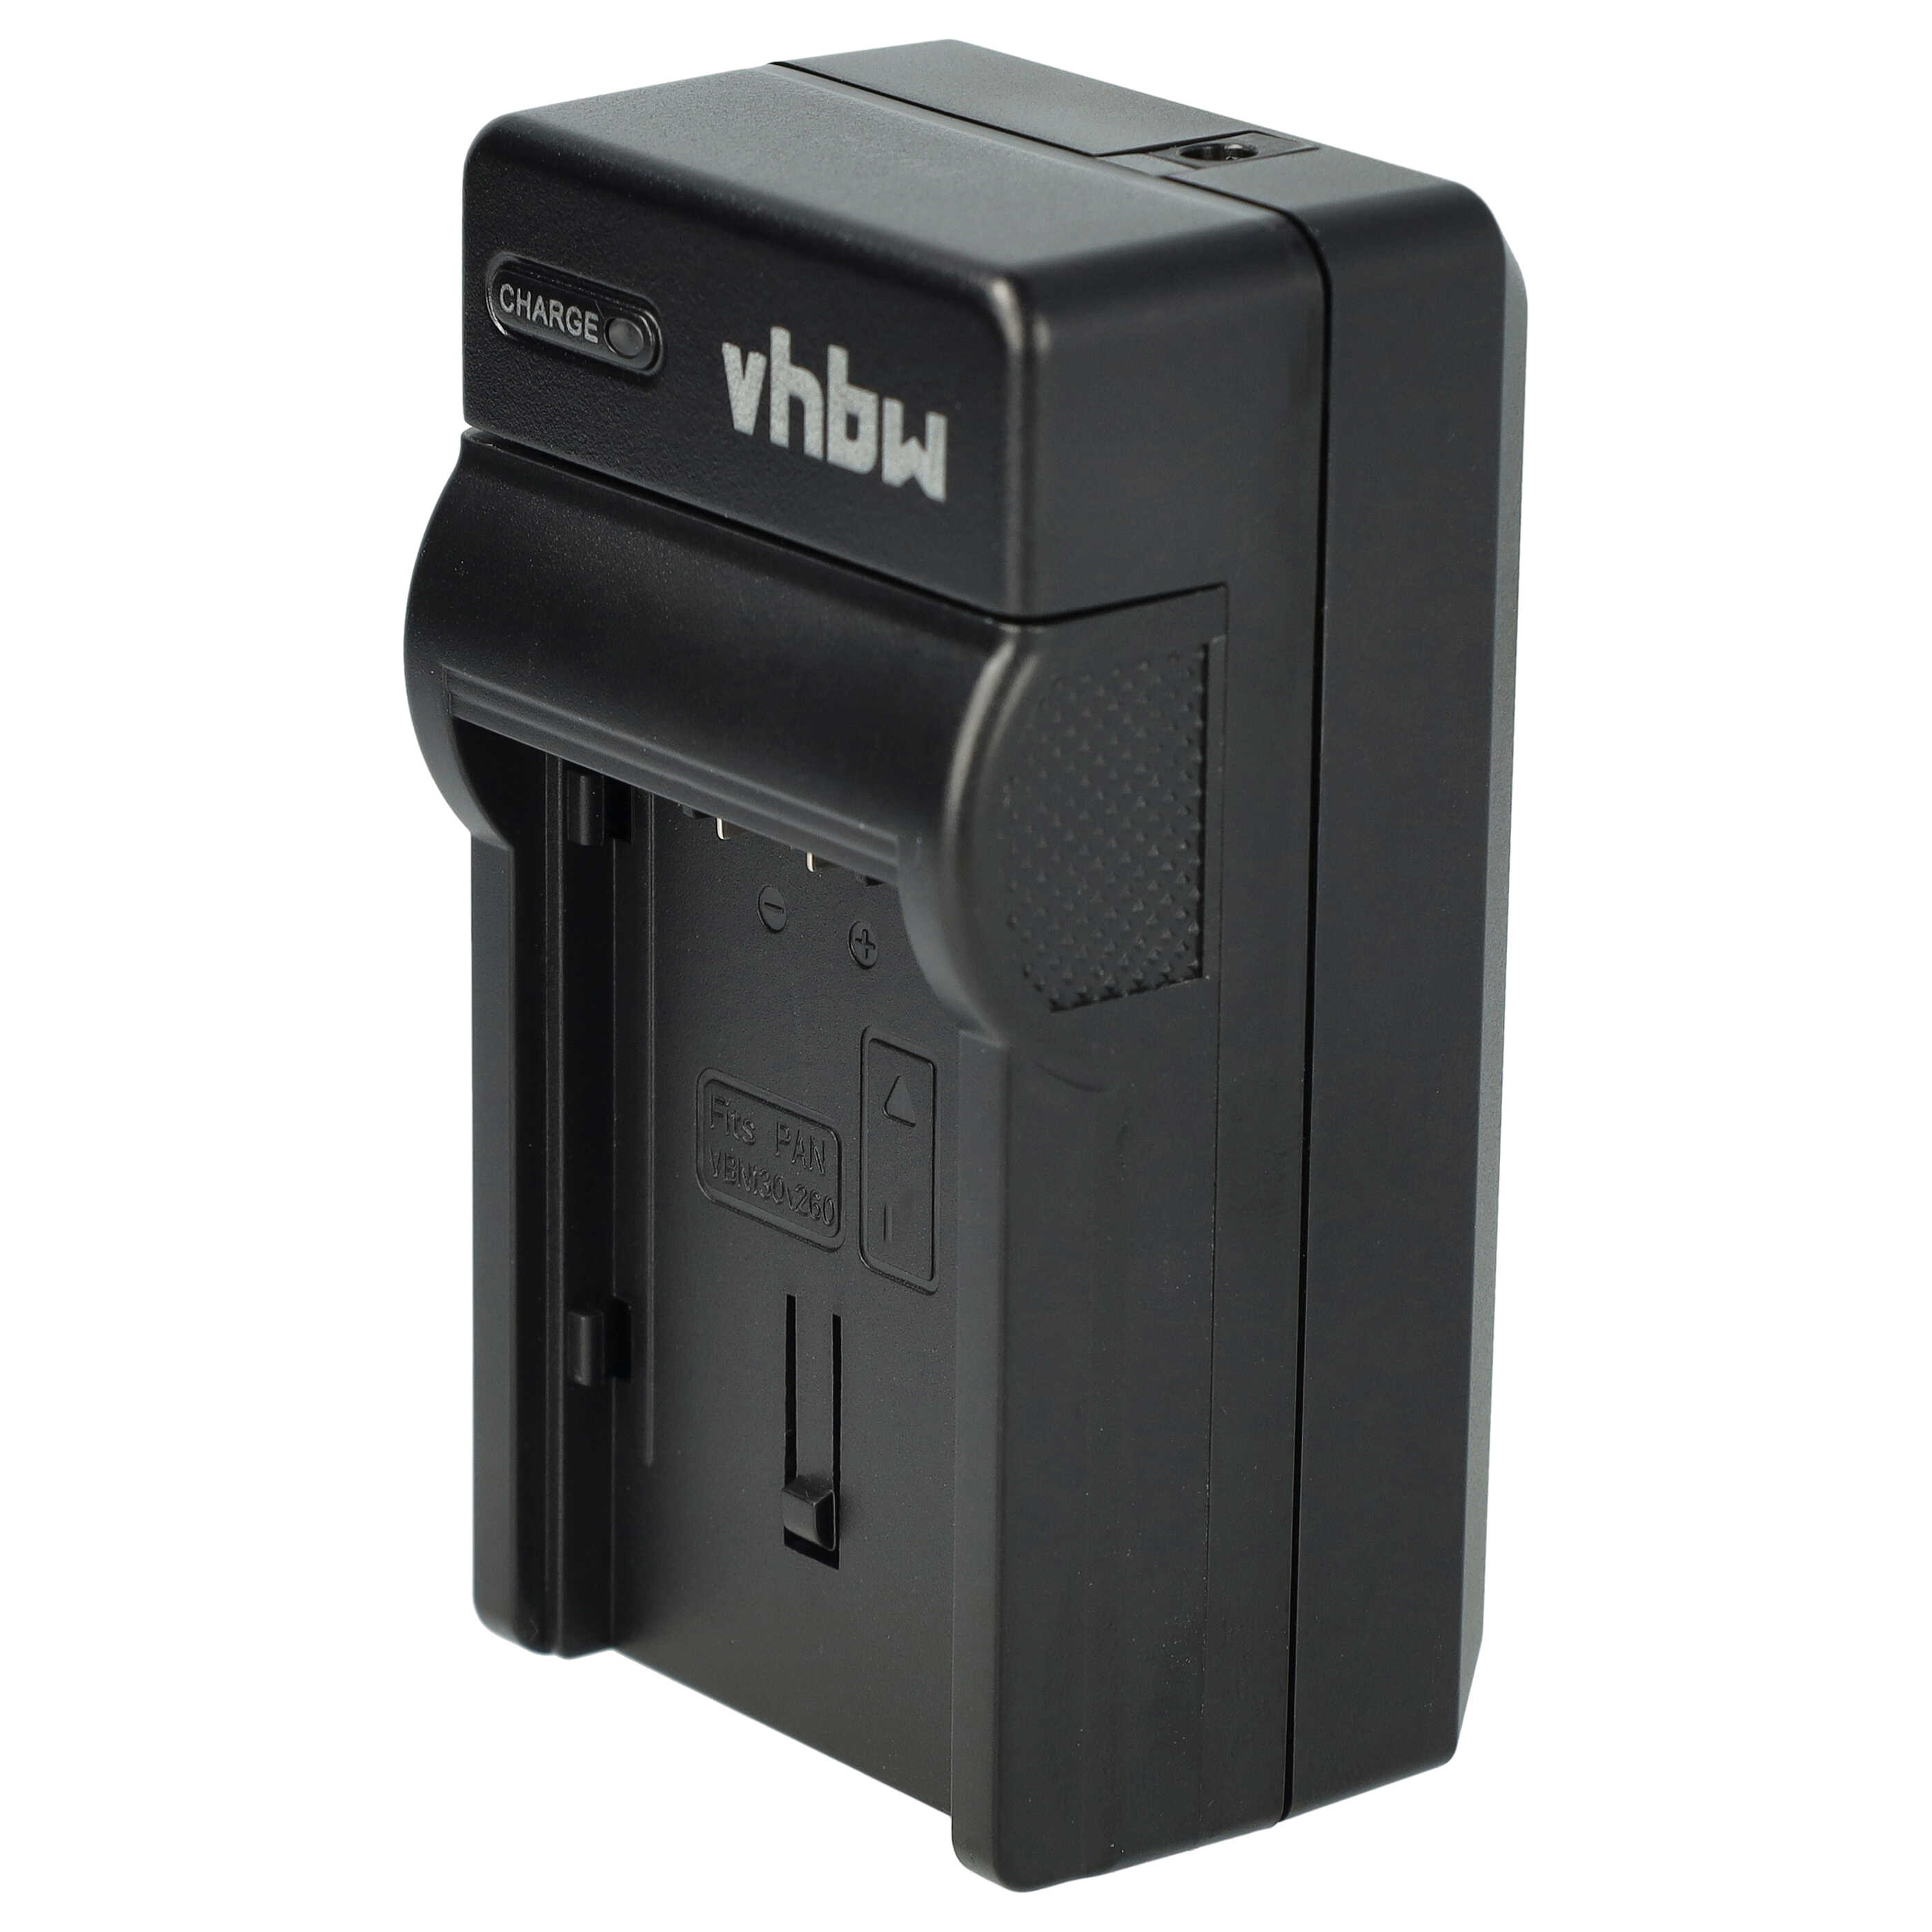 Akku Ladegerät passend für HS900 Kamera u.a. - 0,6 A, 8,4 V